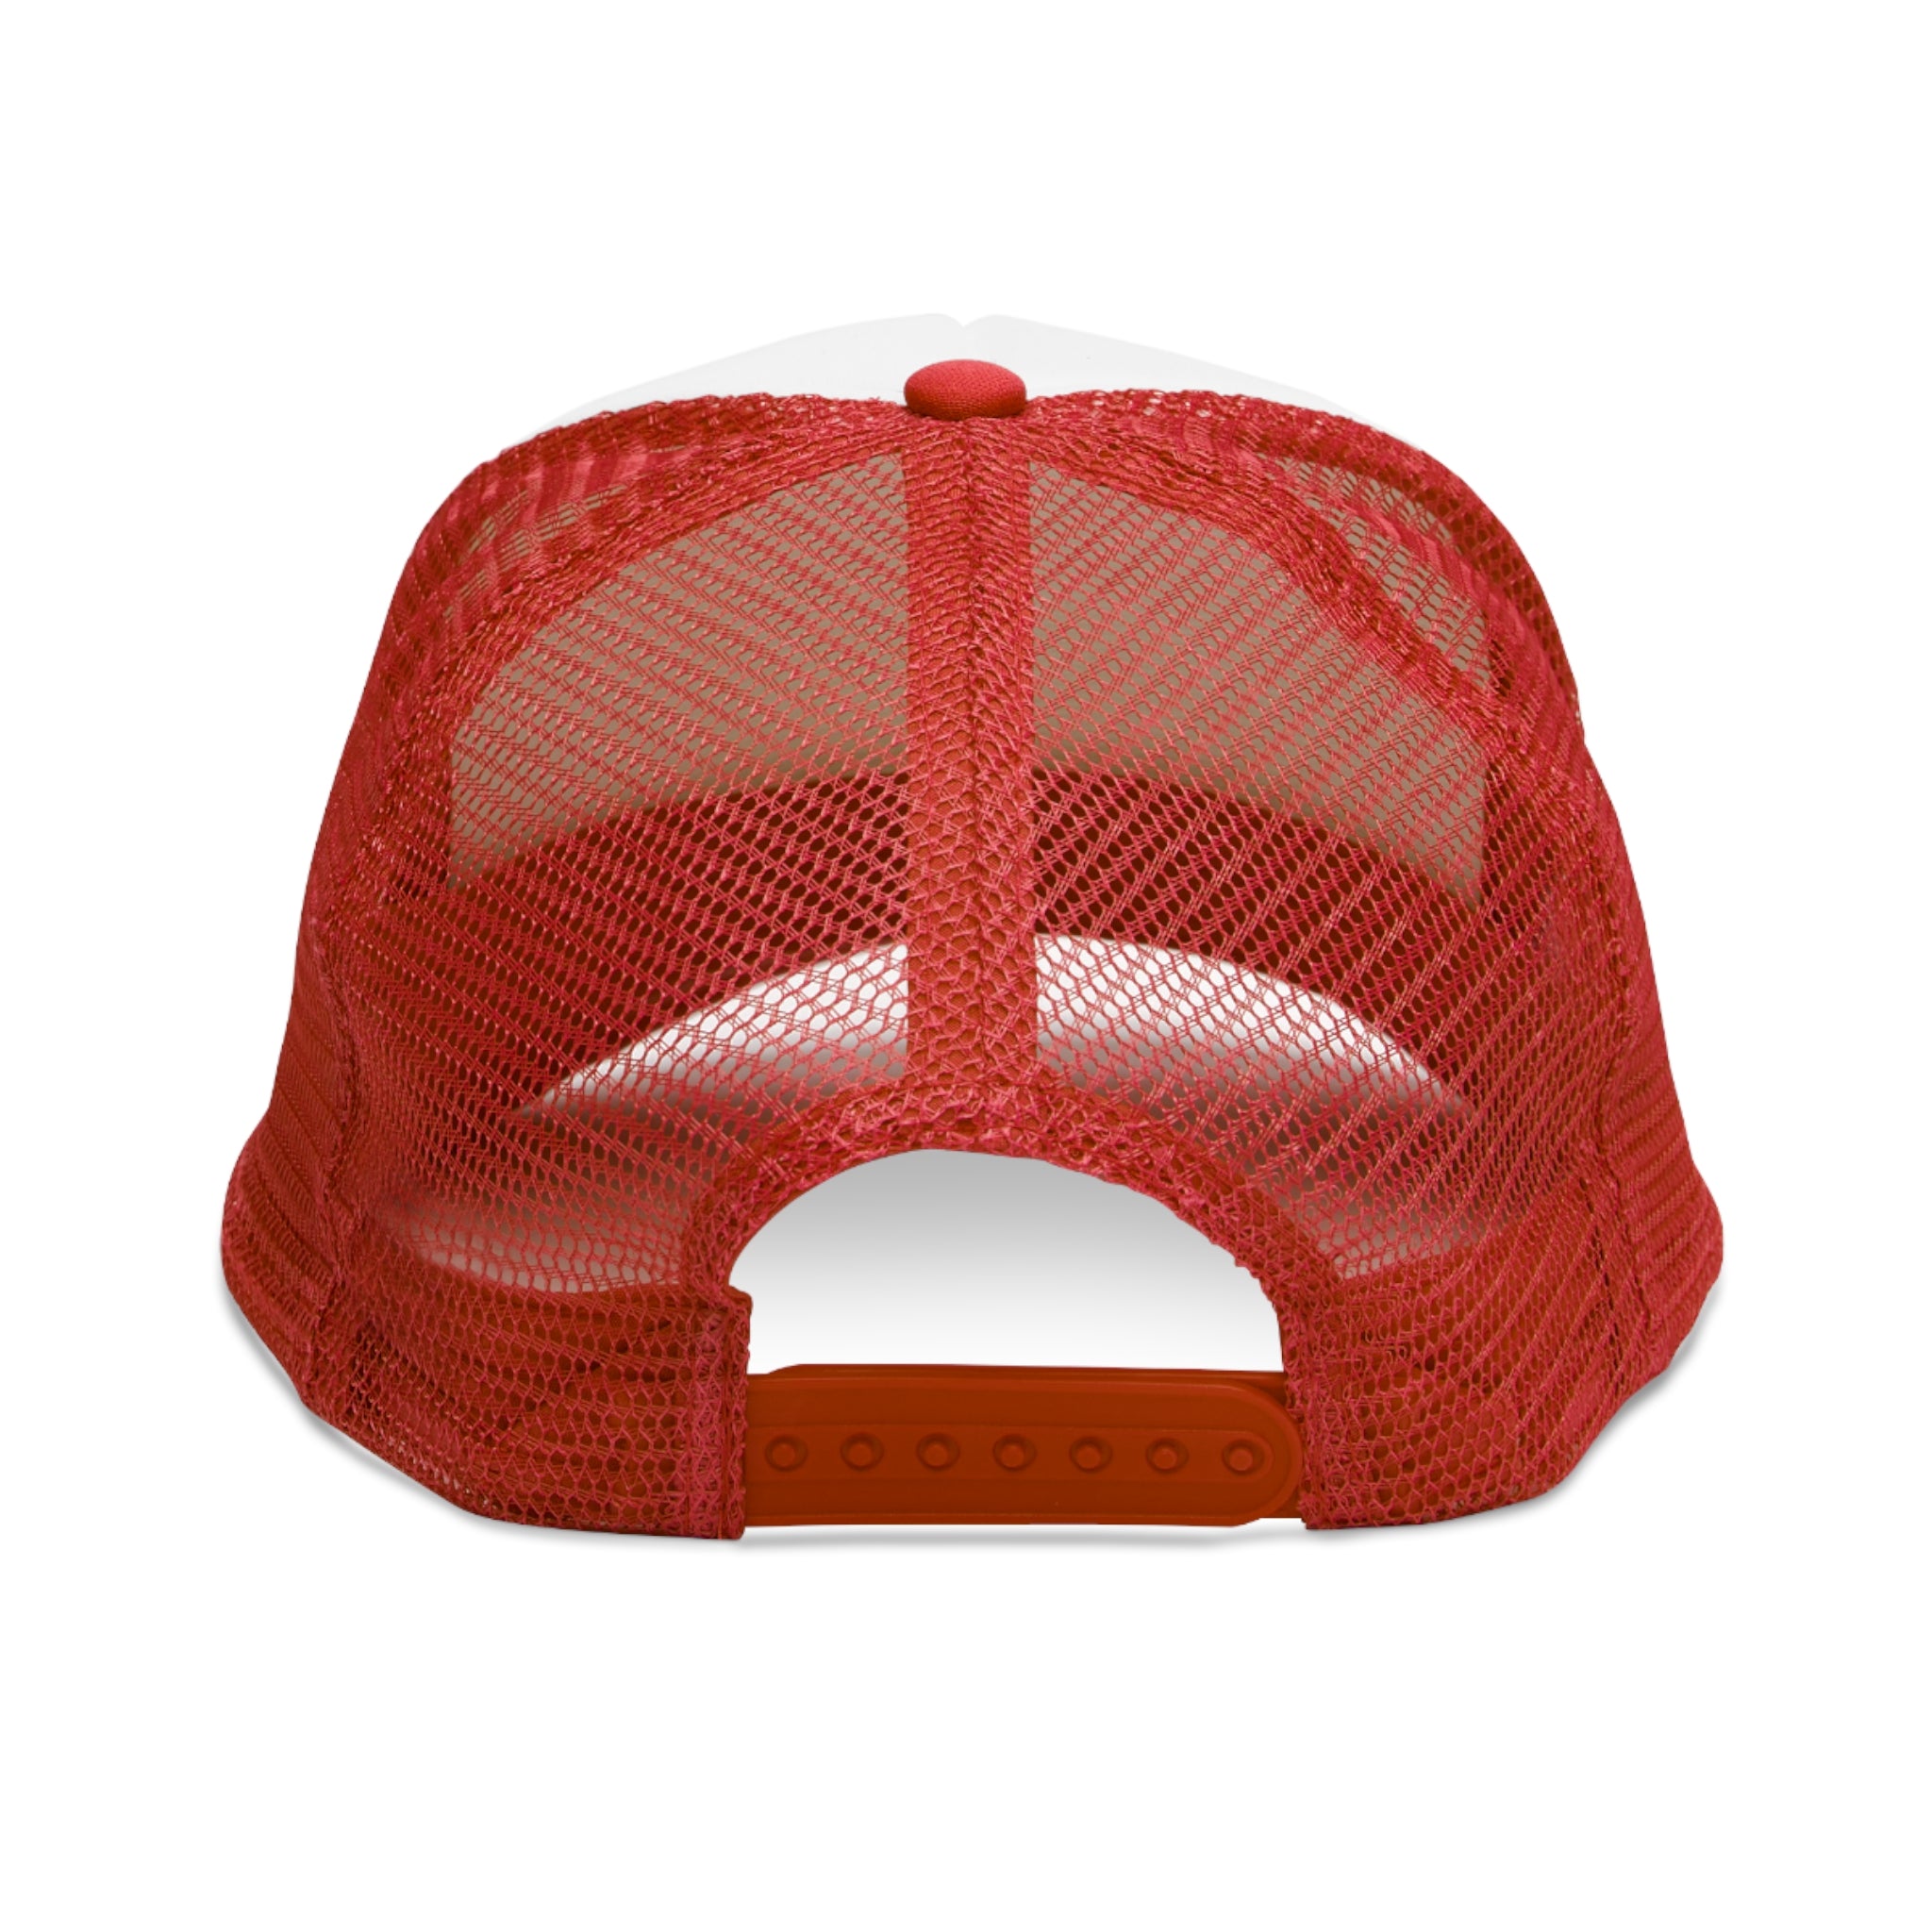 Jule's Red Logo Trucker Hat